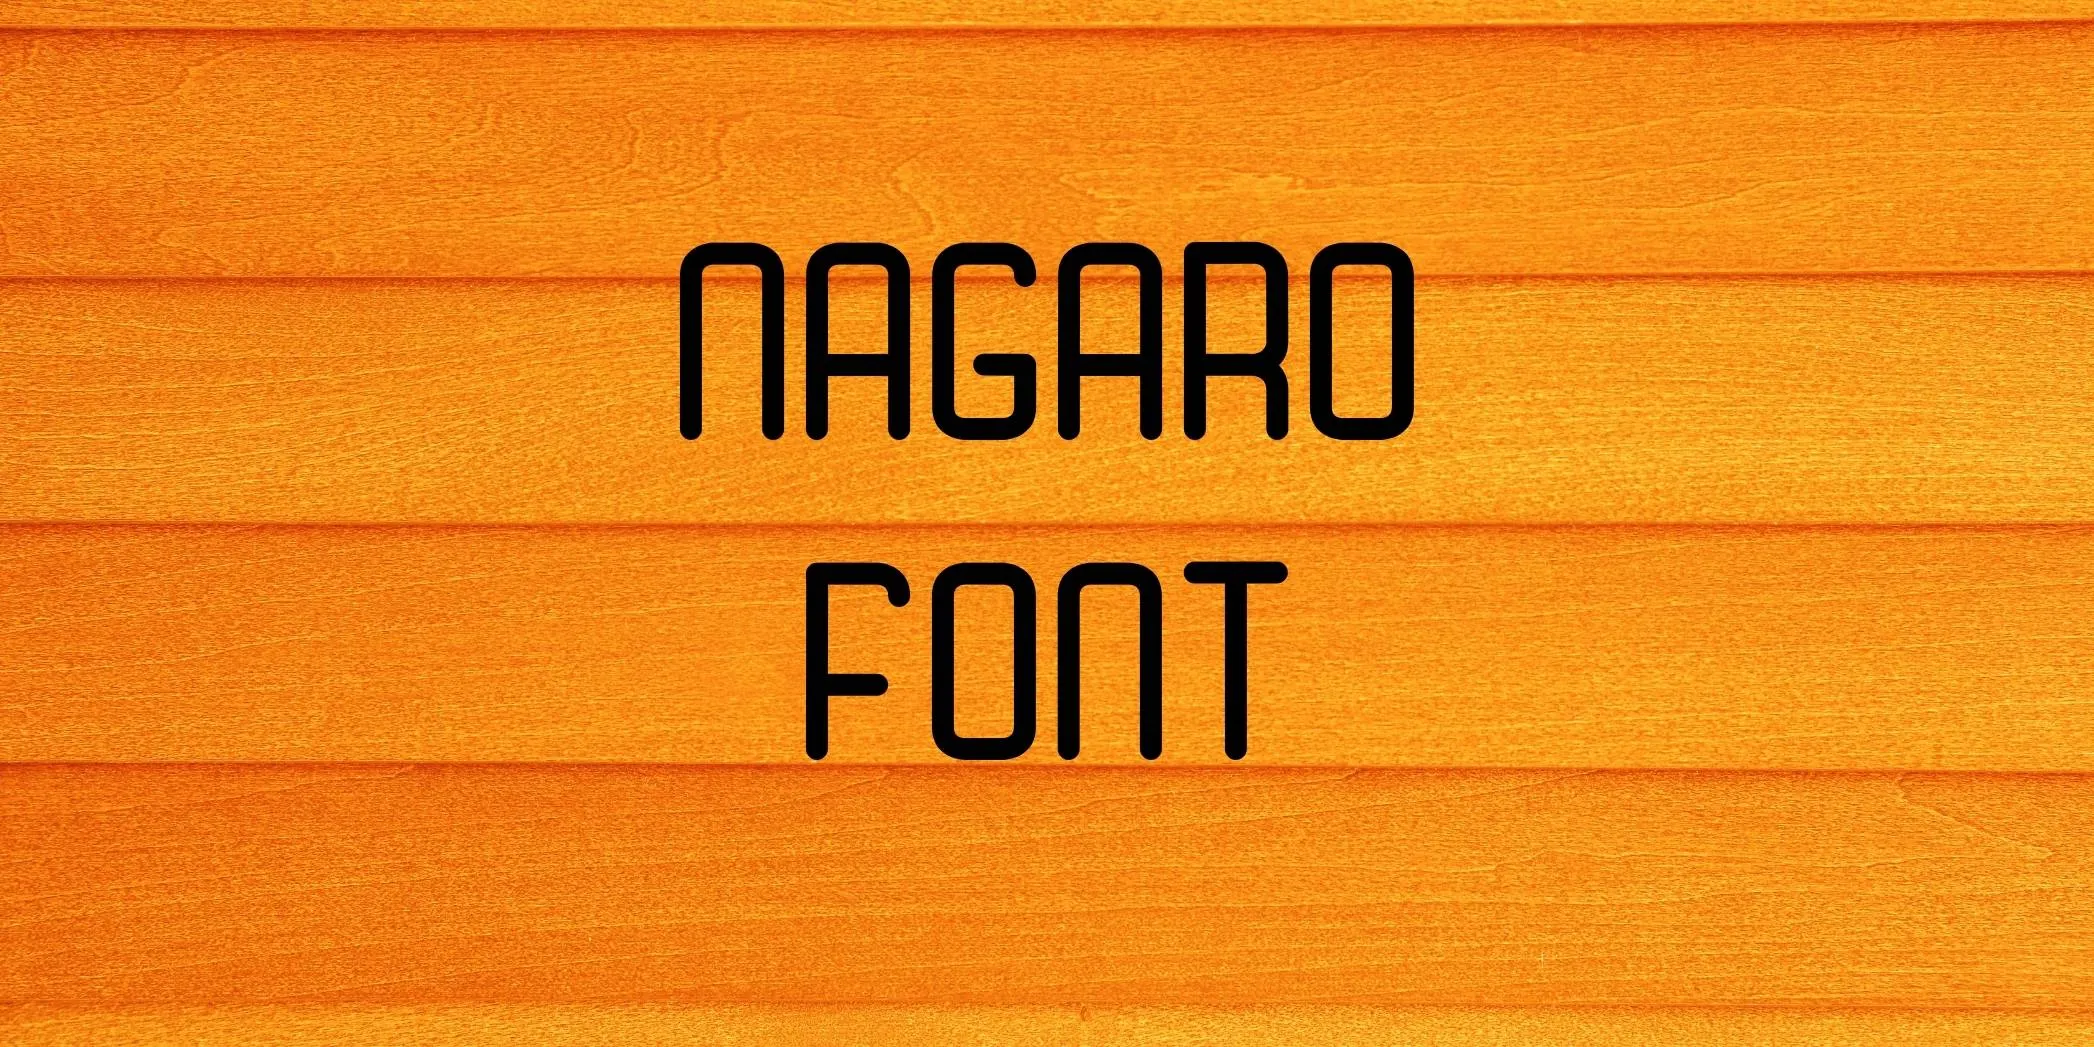 Nagaro Font Free Download